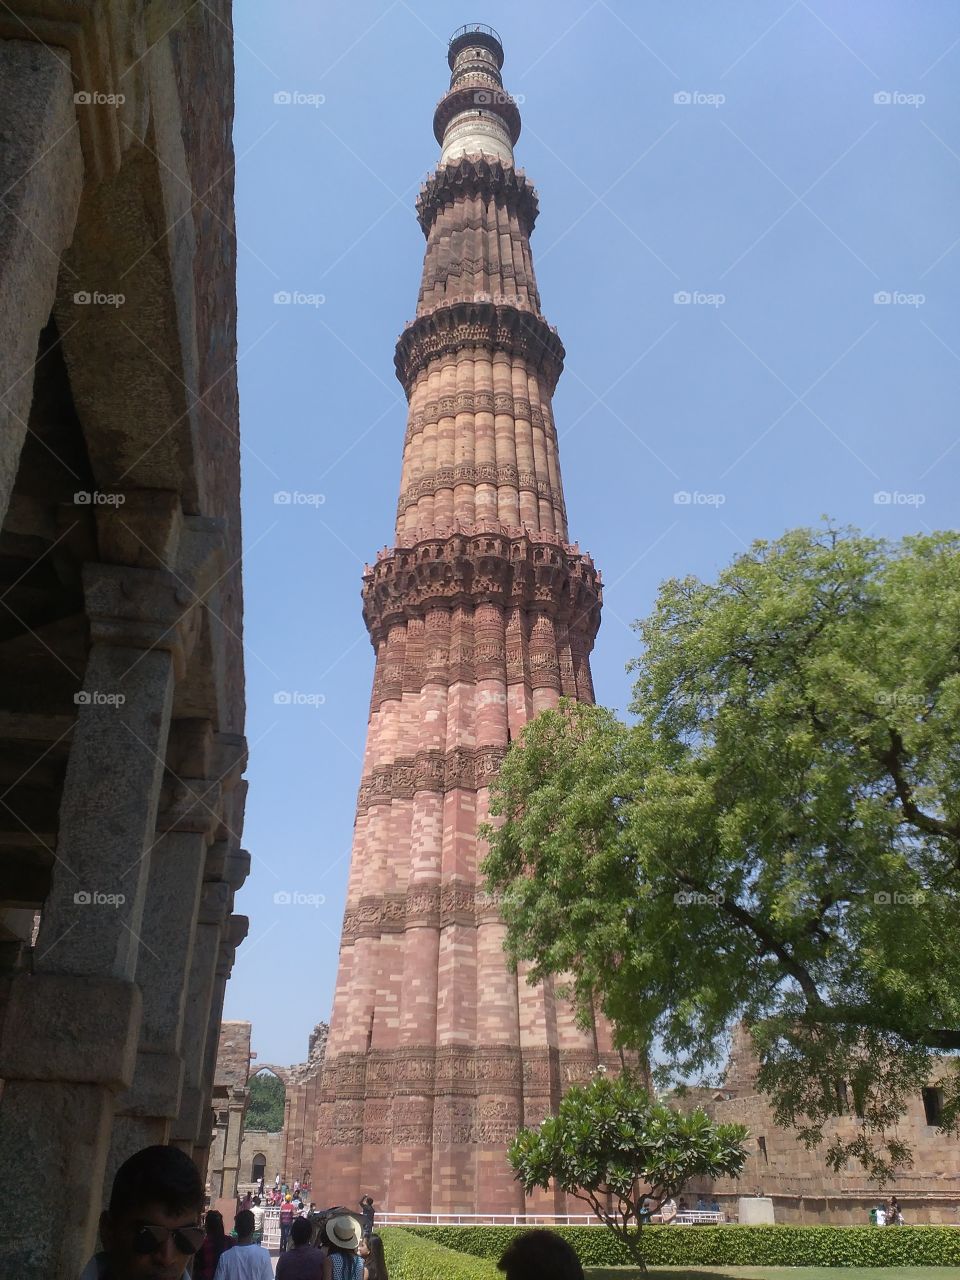 a historical place Delhi
kutubmeenar
India